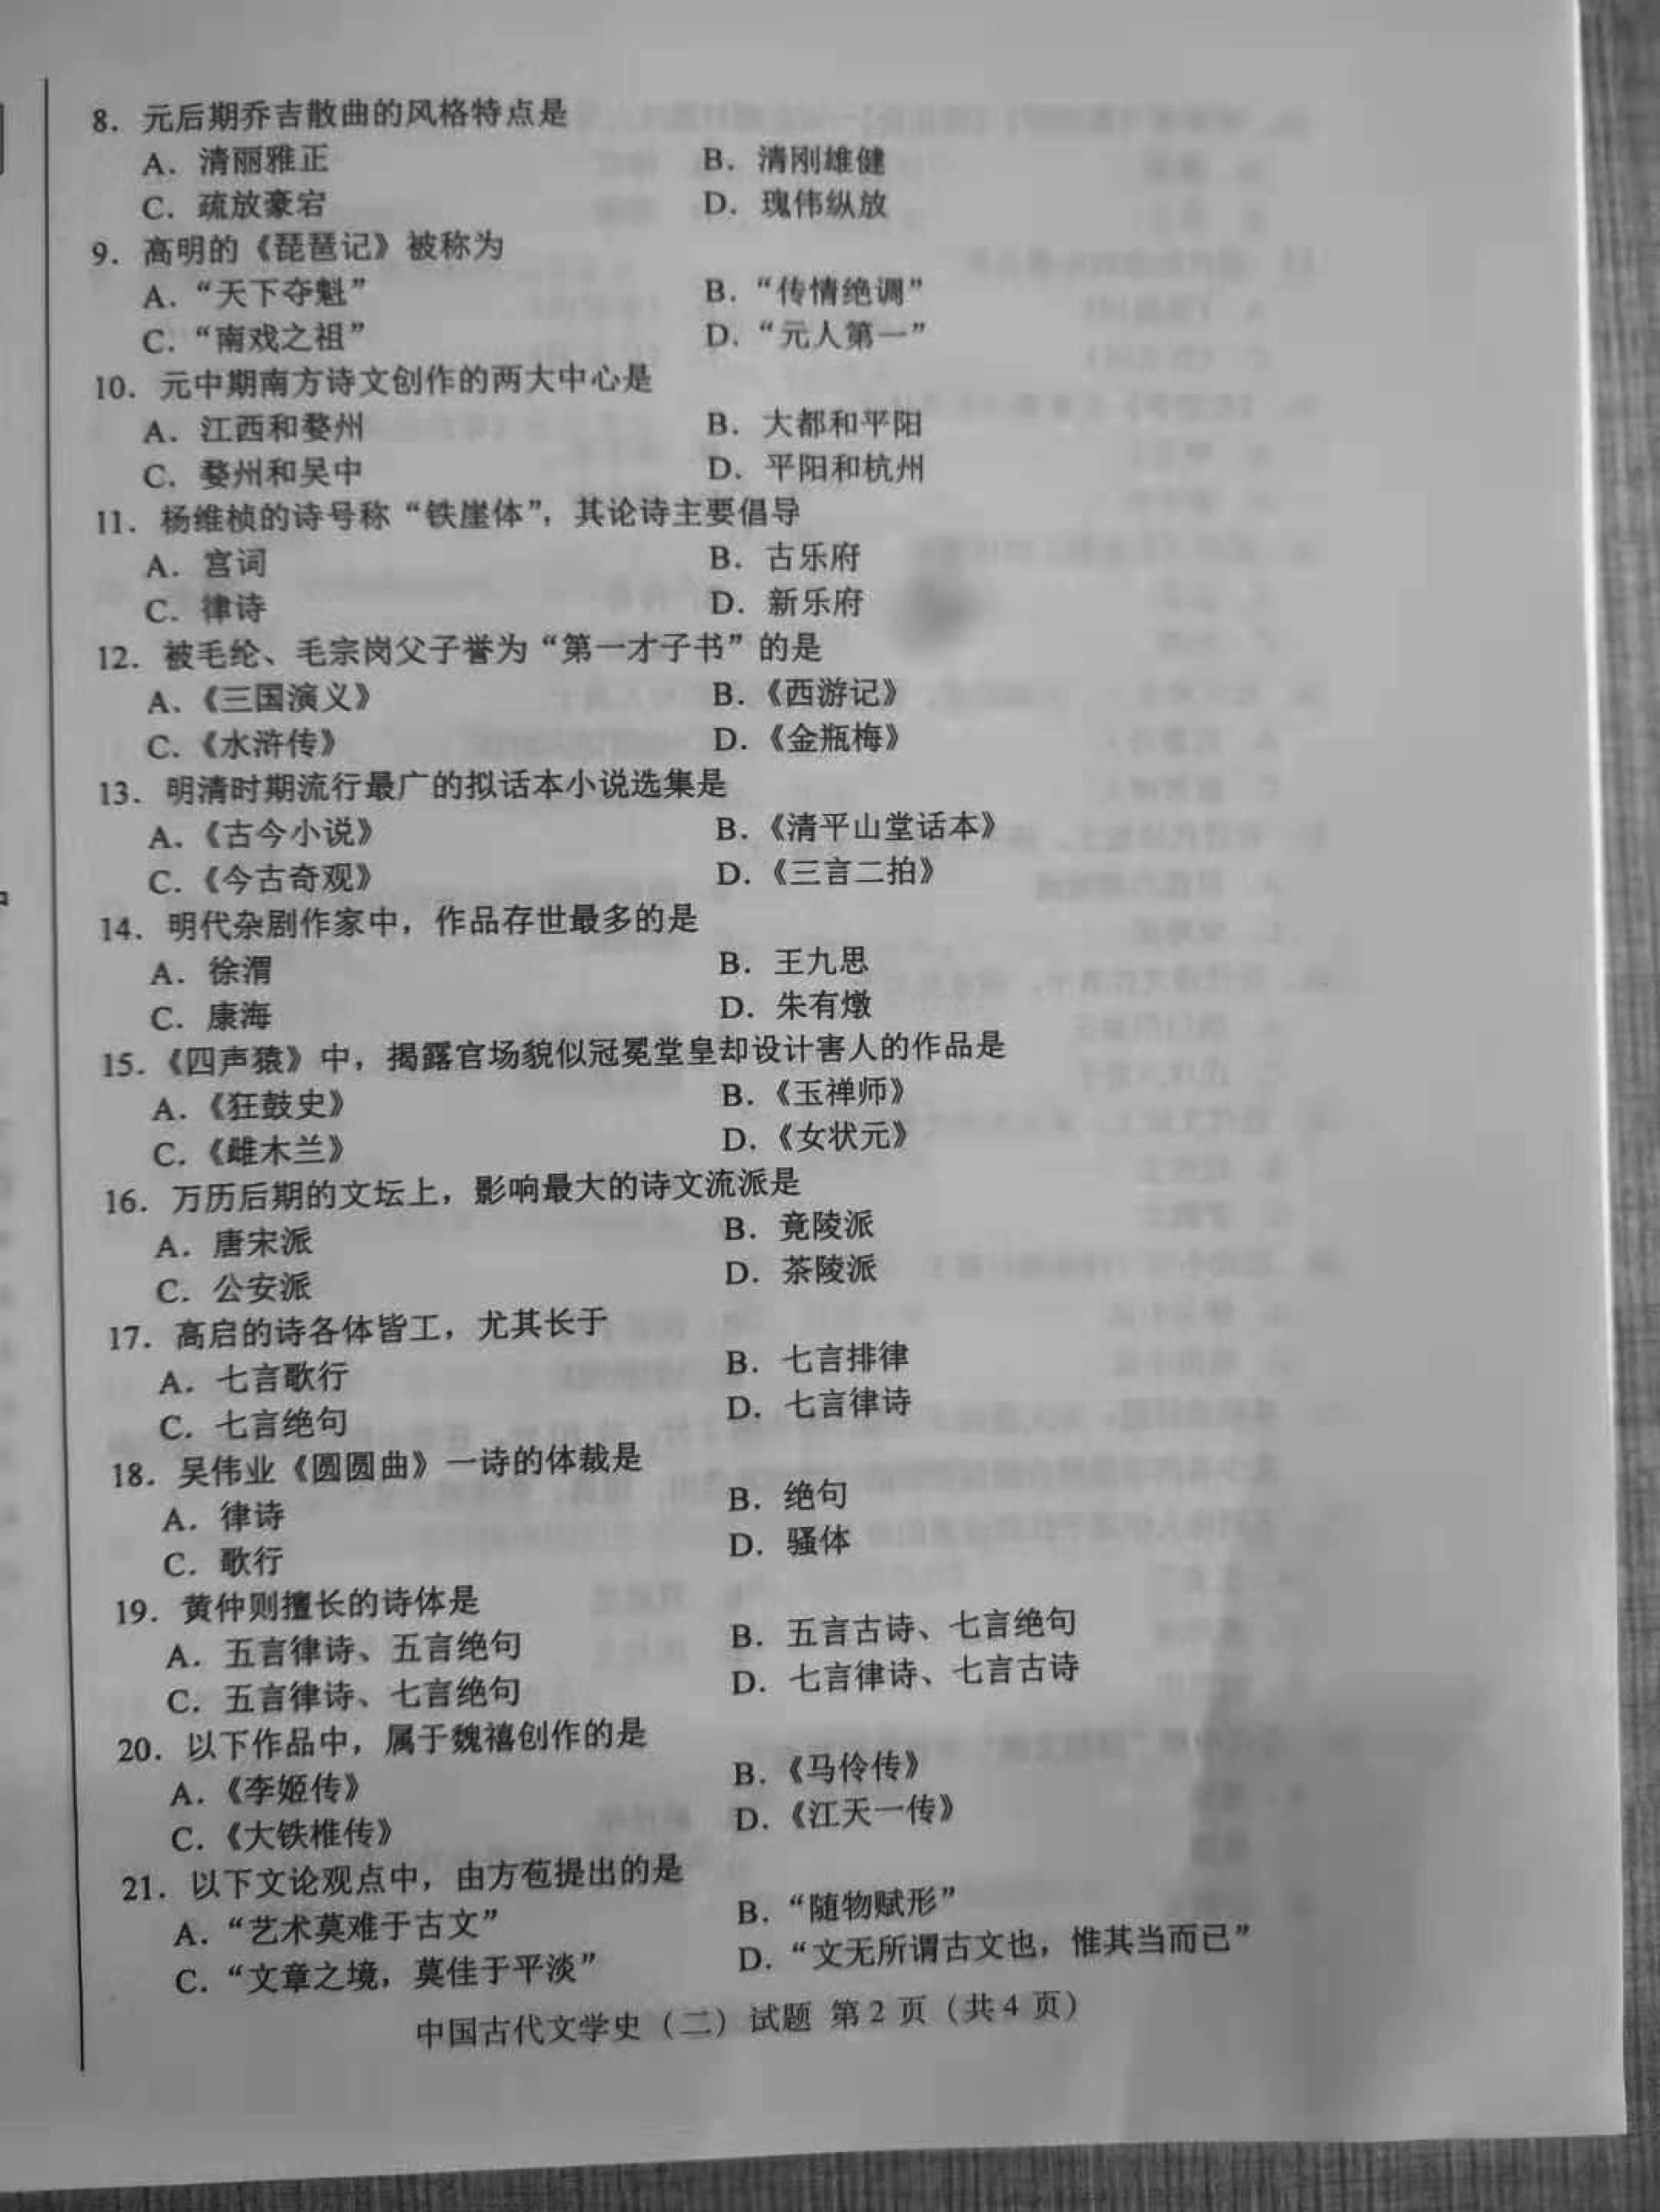 贵州2019年10月自考00539中国古代文学史（二）历年真题及答案